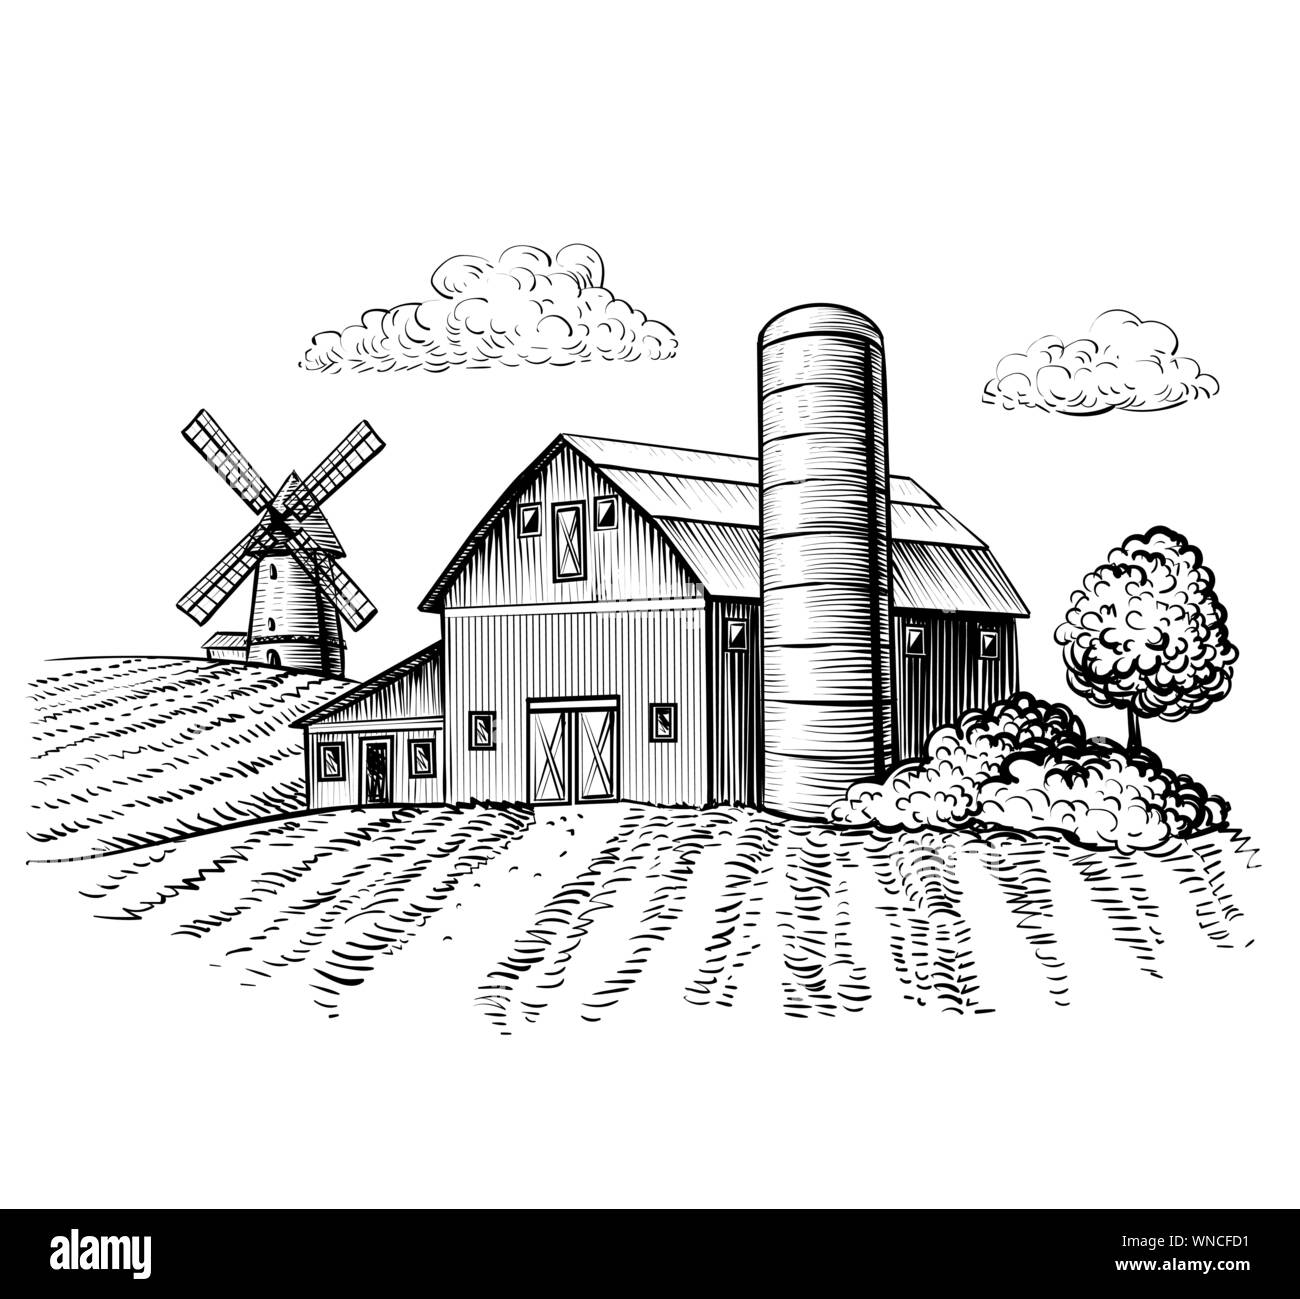 Ländliche Landschaft, Farm Barn und Windmühle Skizze. Hand zeichnen Abbildung: natürliche malerische Landschaft. Landwirtschaftlichen Hof und Feld. Vektor monochrom Übersicht Bild Stock Vektor